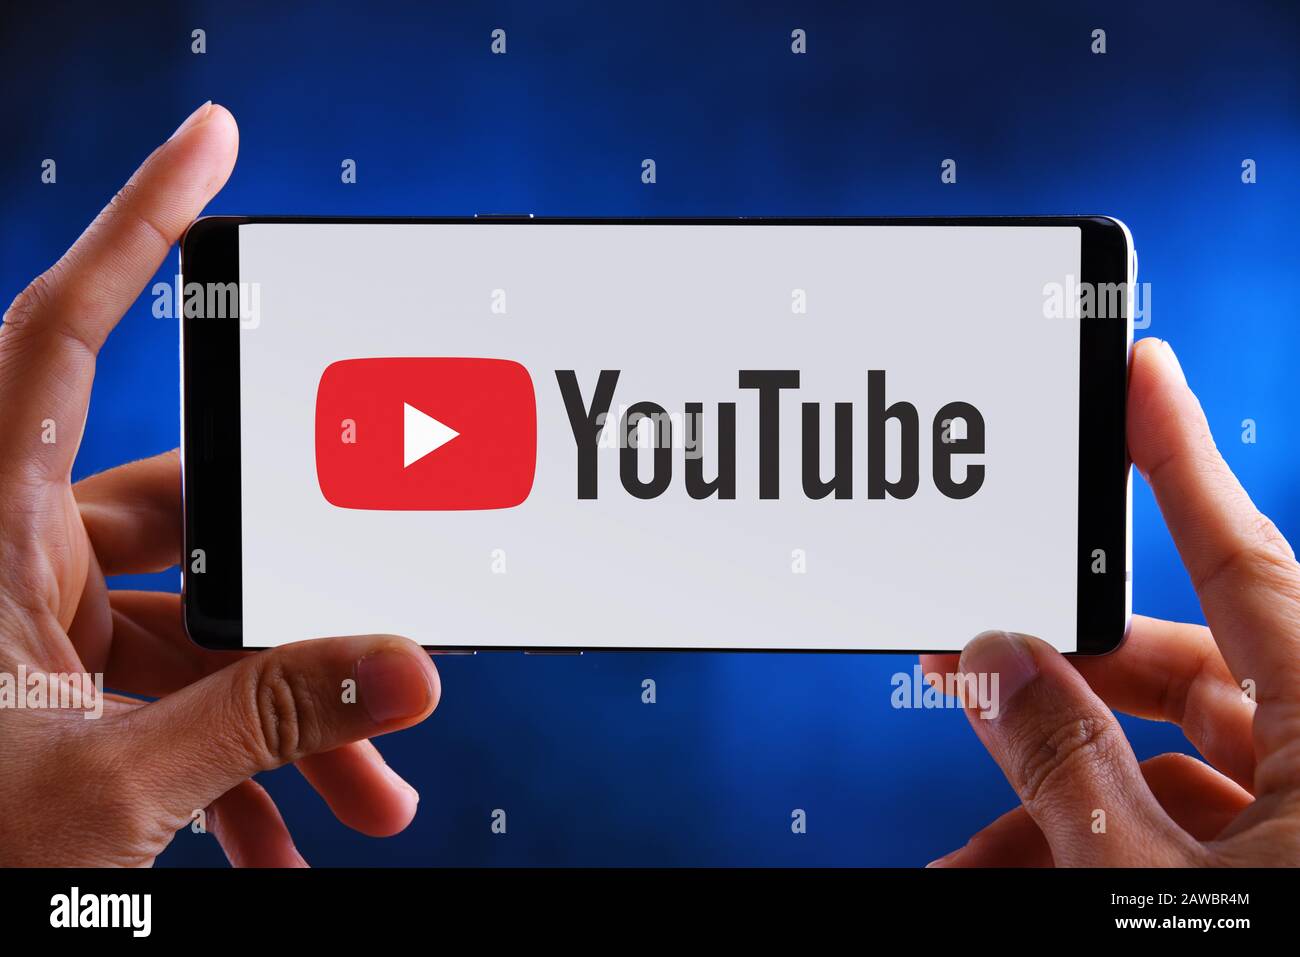 Poznan, POL - 10 JUILLET 2019: Main tenant smartphone affichant le logo de YouTube, un site américain de partage de vidéos basé à San Bruno, Califor Banque D'Images